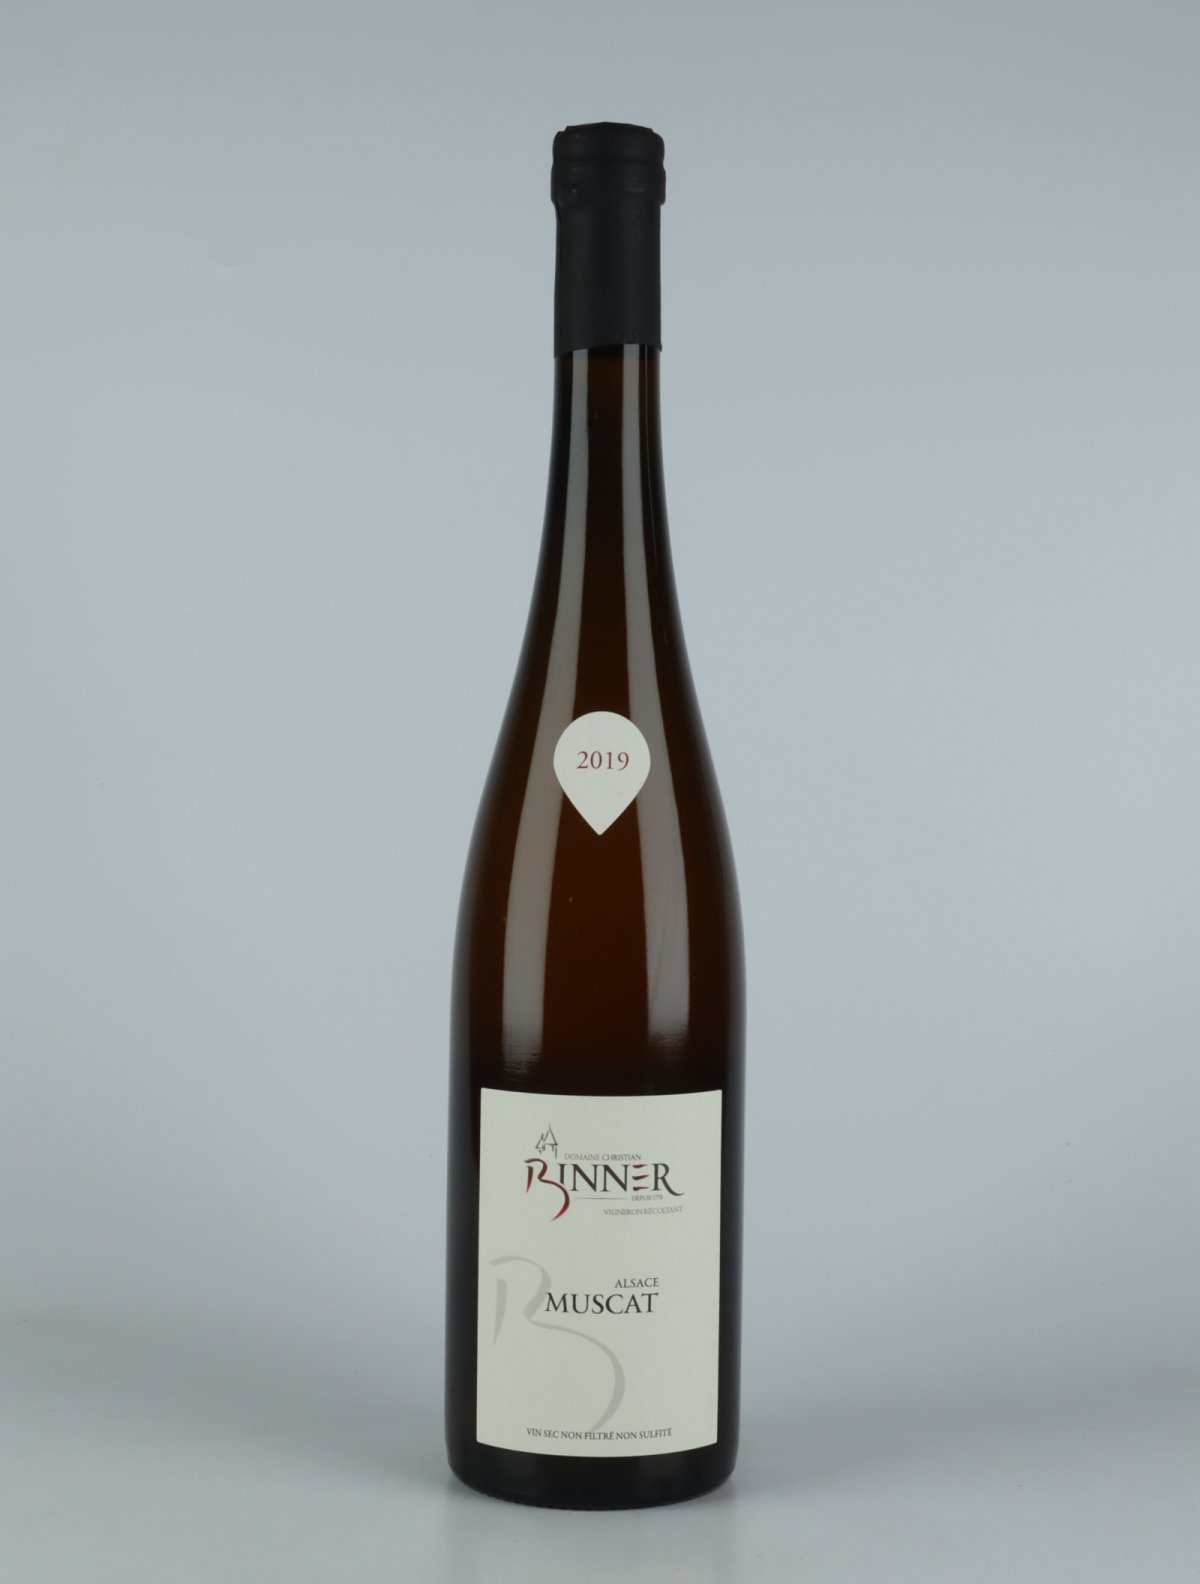 En flaske 2019 Muscat Hvidvin fra Domaine Christian Binner, Alsace i Frankrig